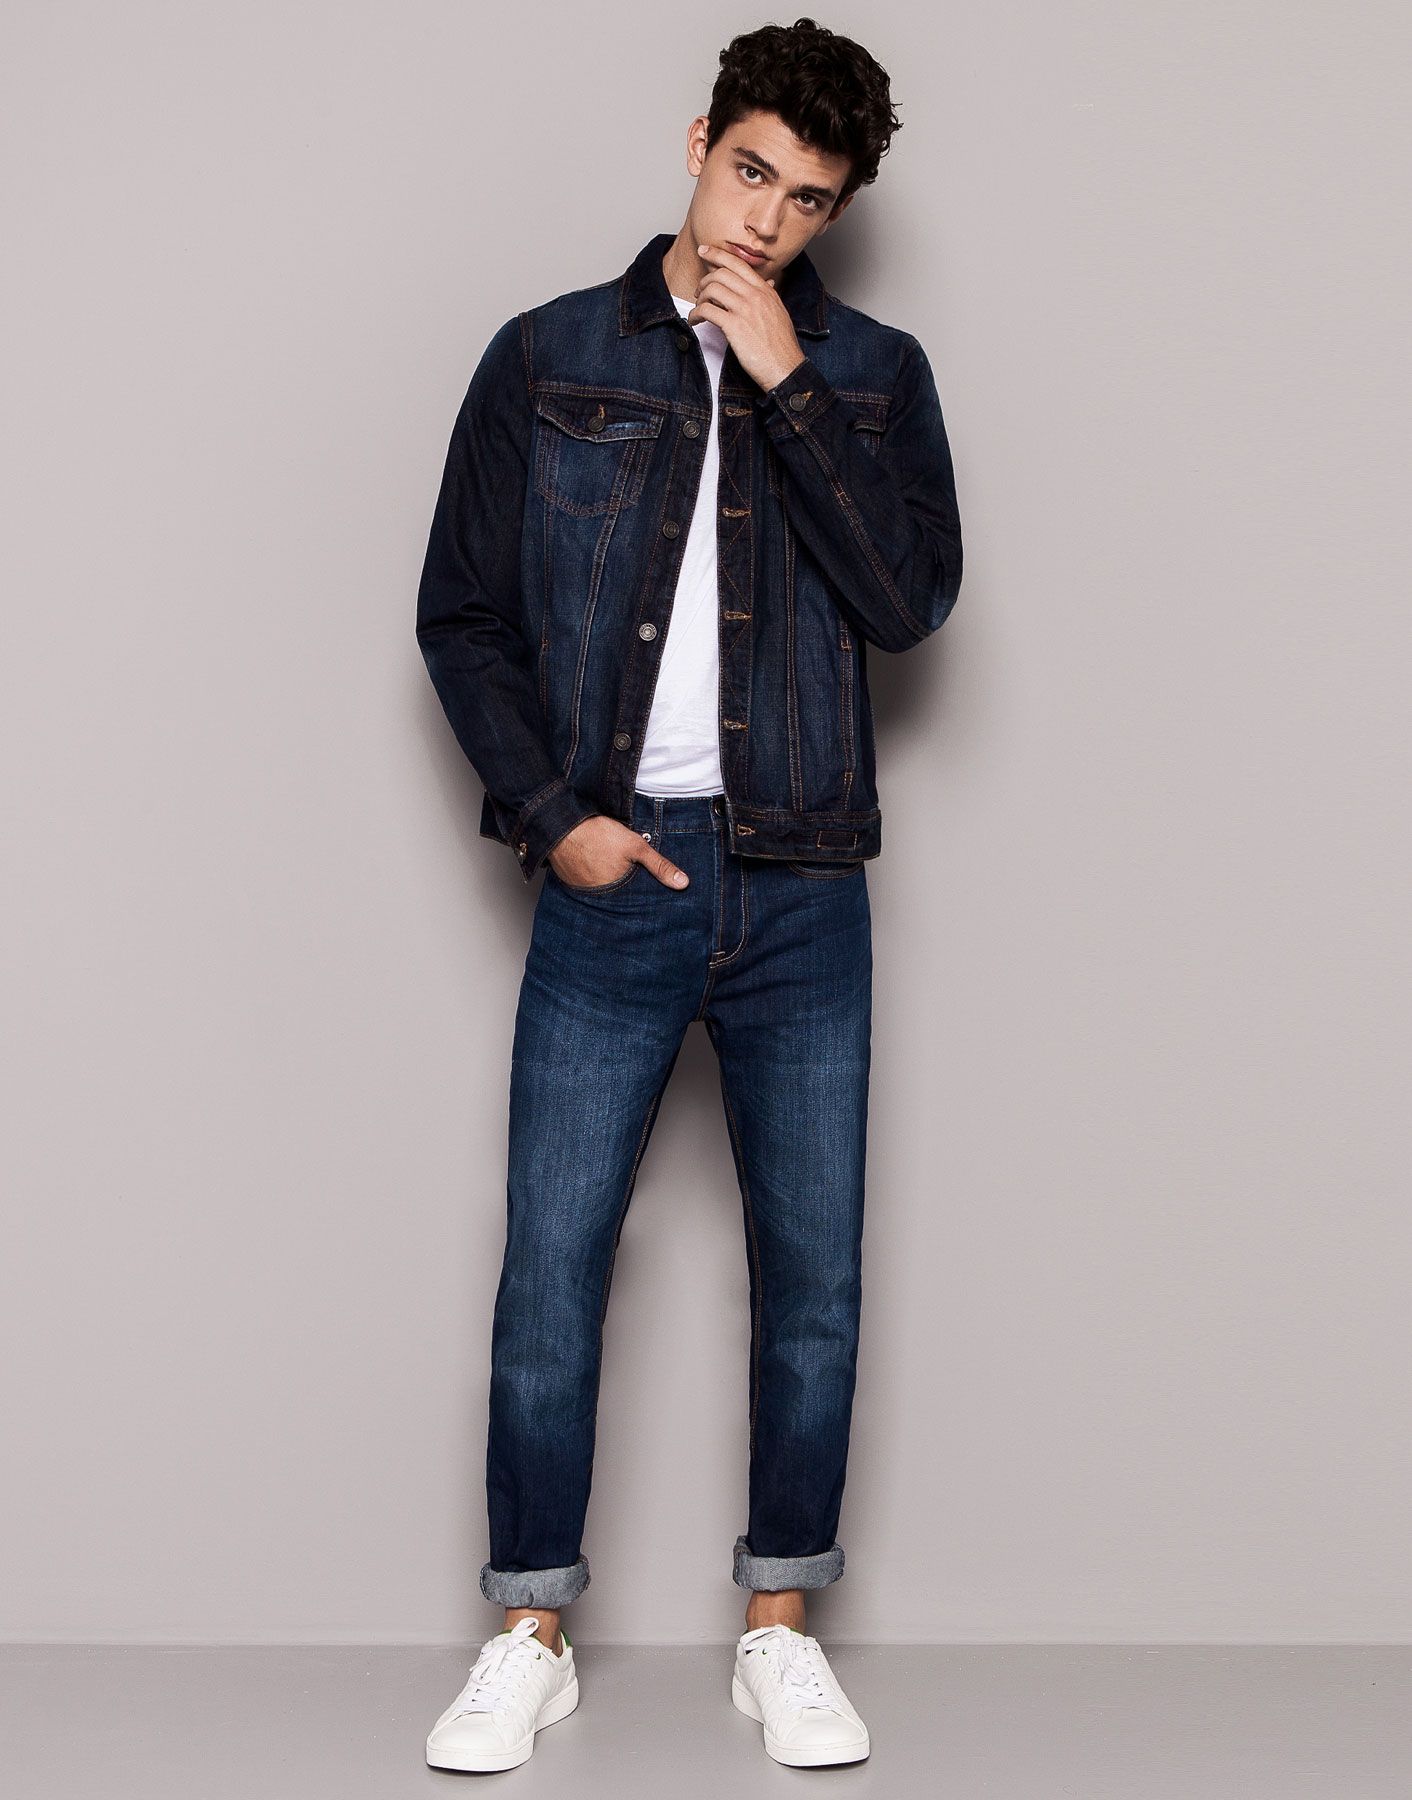 He is wearing jeans. Ксавьер Серрано. Хавьер Серрано (Xavier Serrano). Мужчина в джинсах. Джинсовая мужская одежда модель.